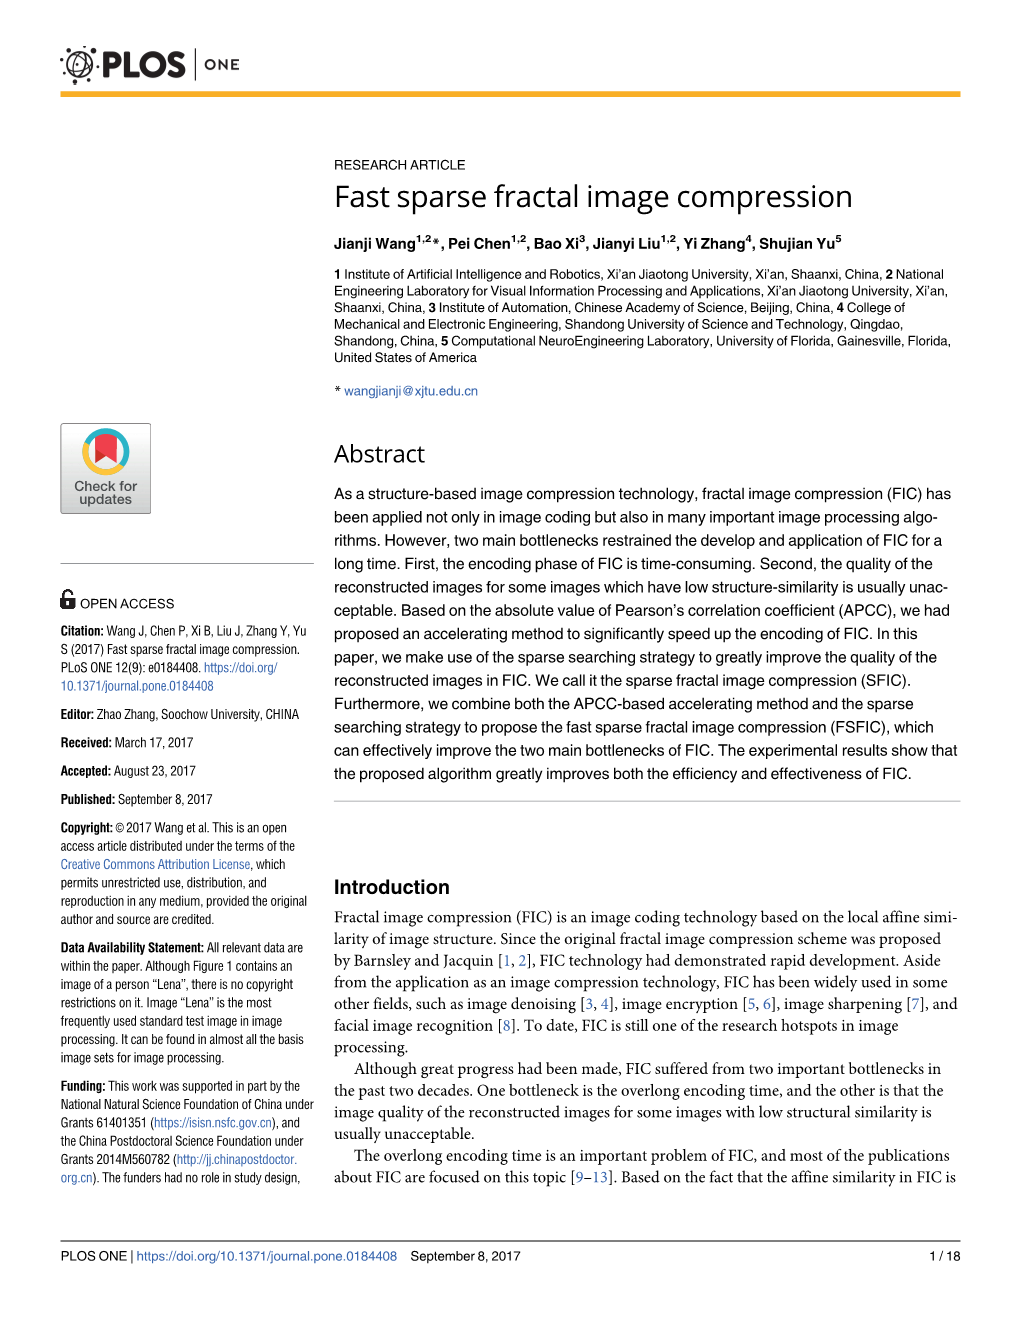 Fast Sparse Fractal Image Compression